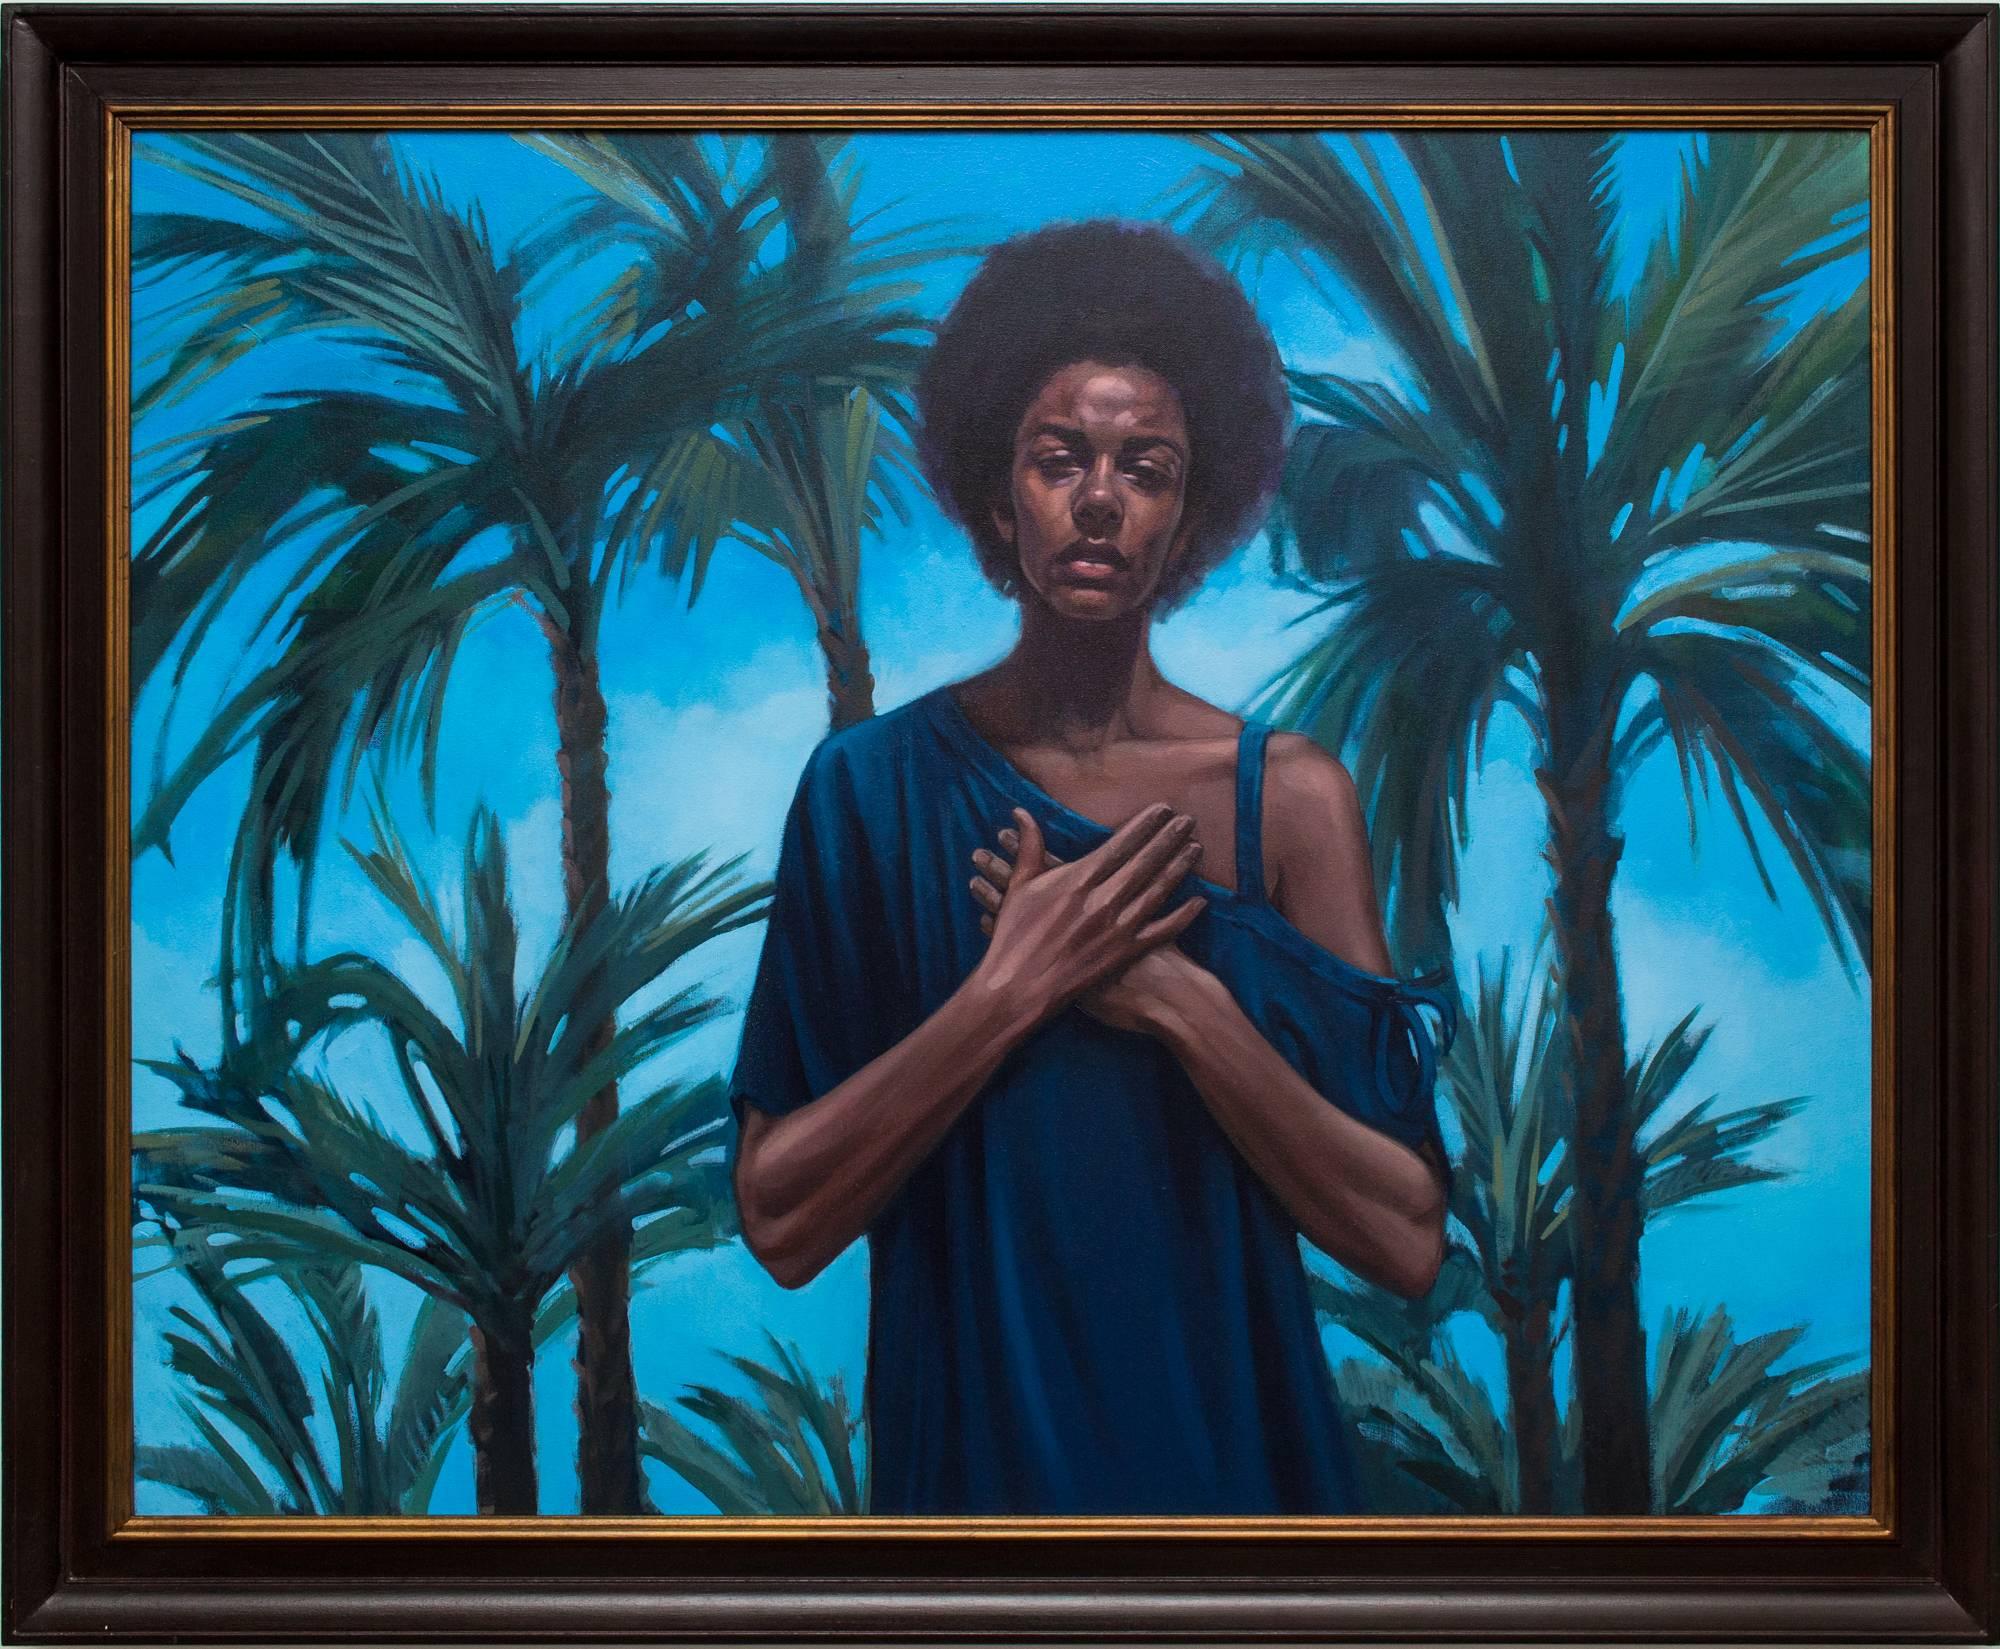 Portrait Painting Katherine Fraser - "Letter to the World" peinture à l'huile hyperréaliste, femme et palmiers